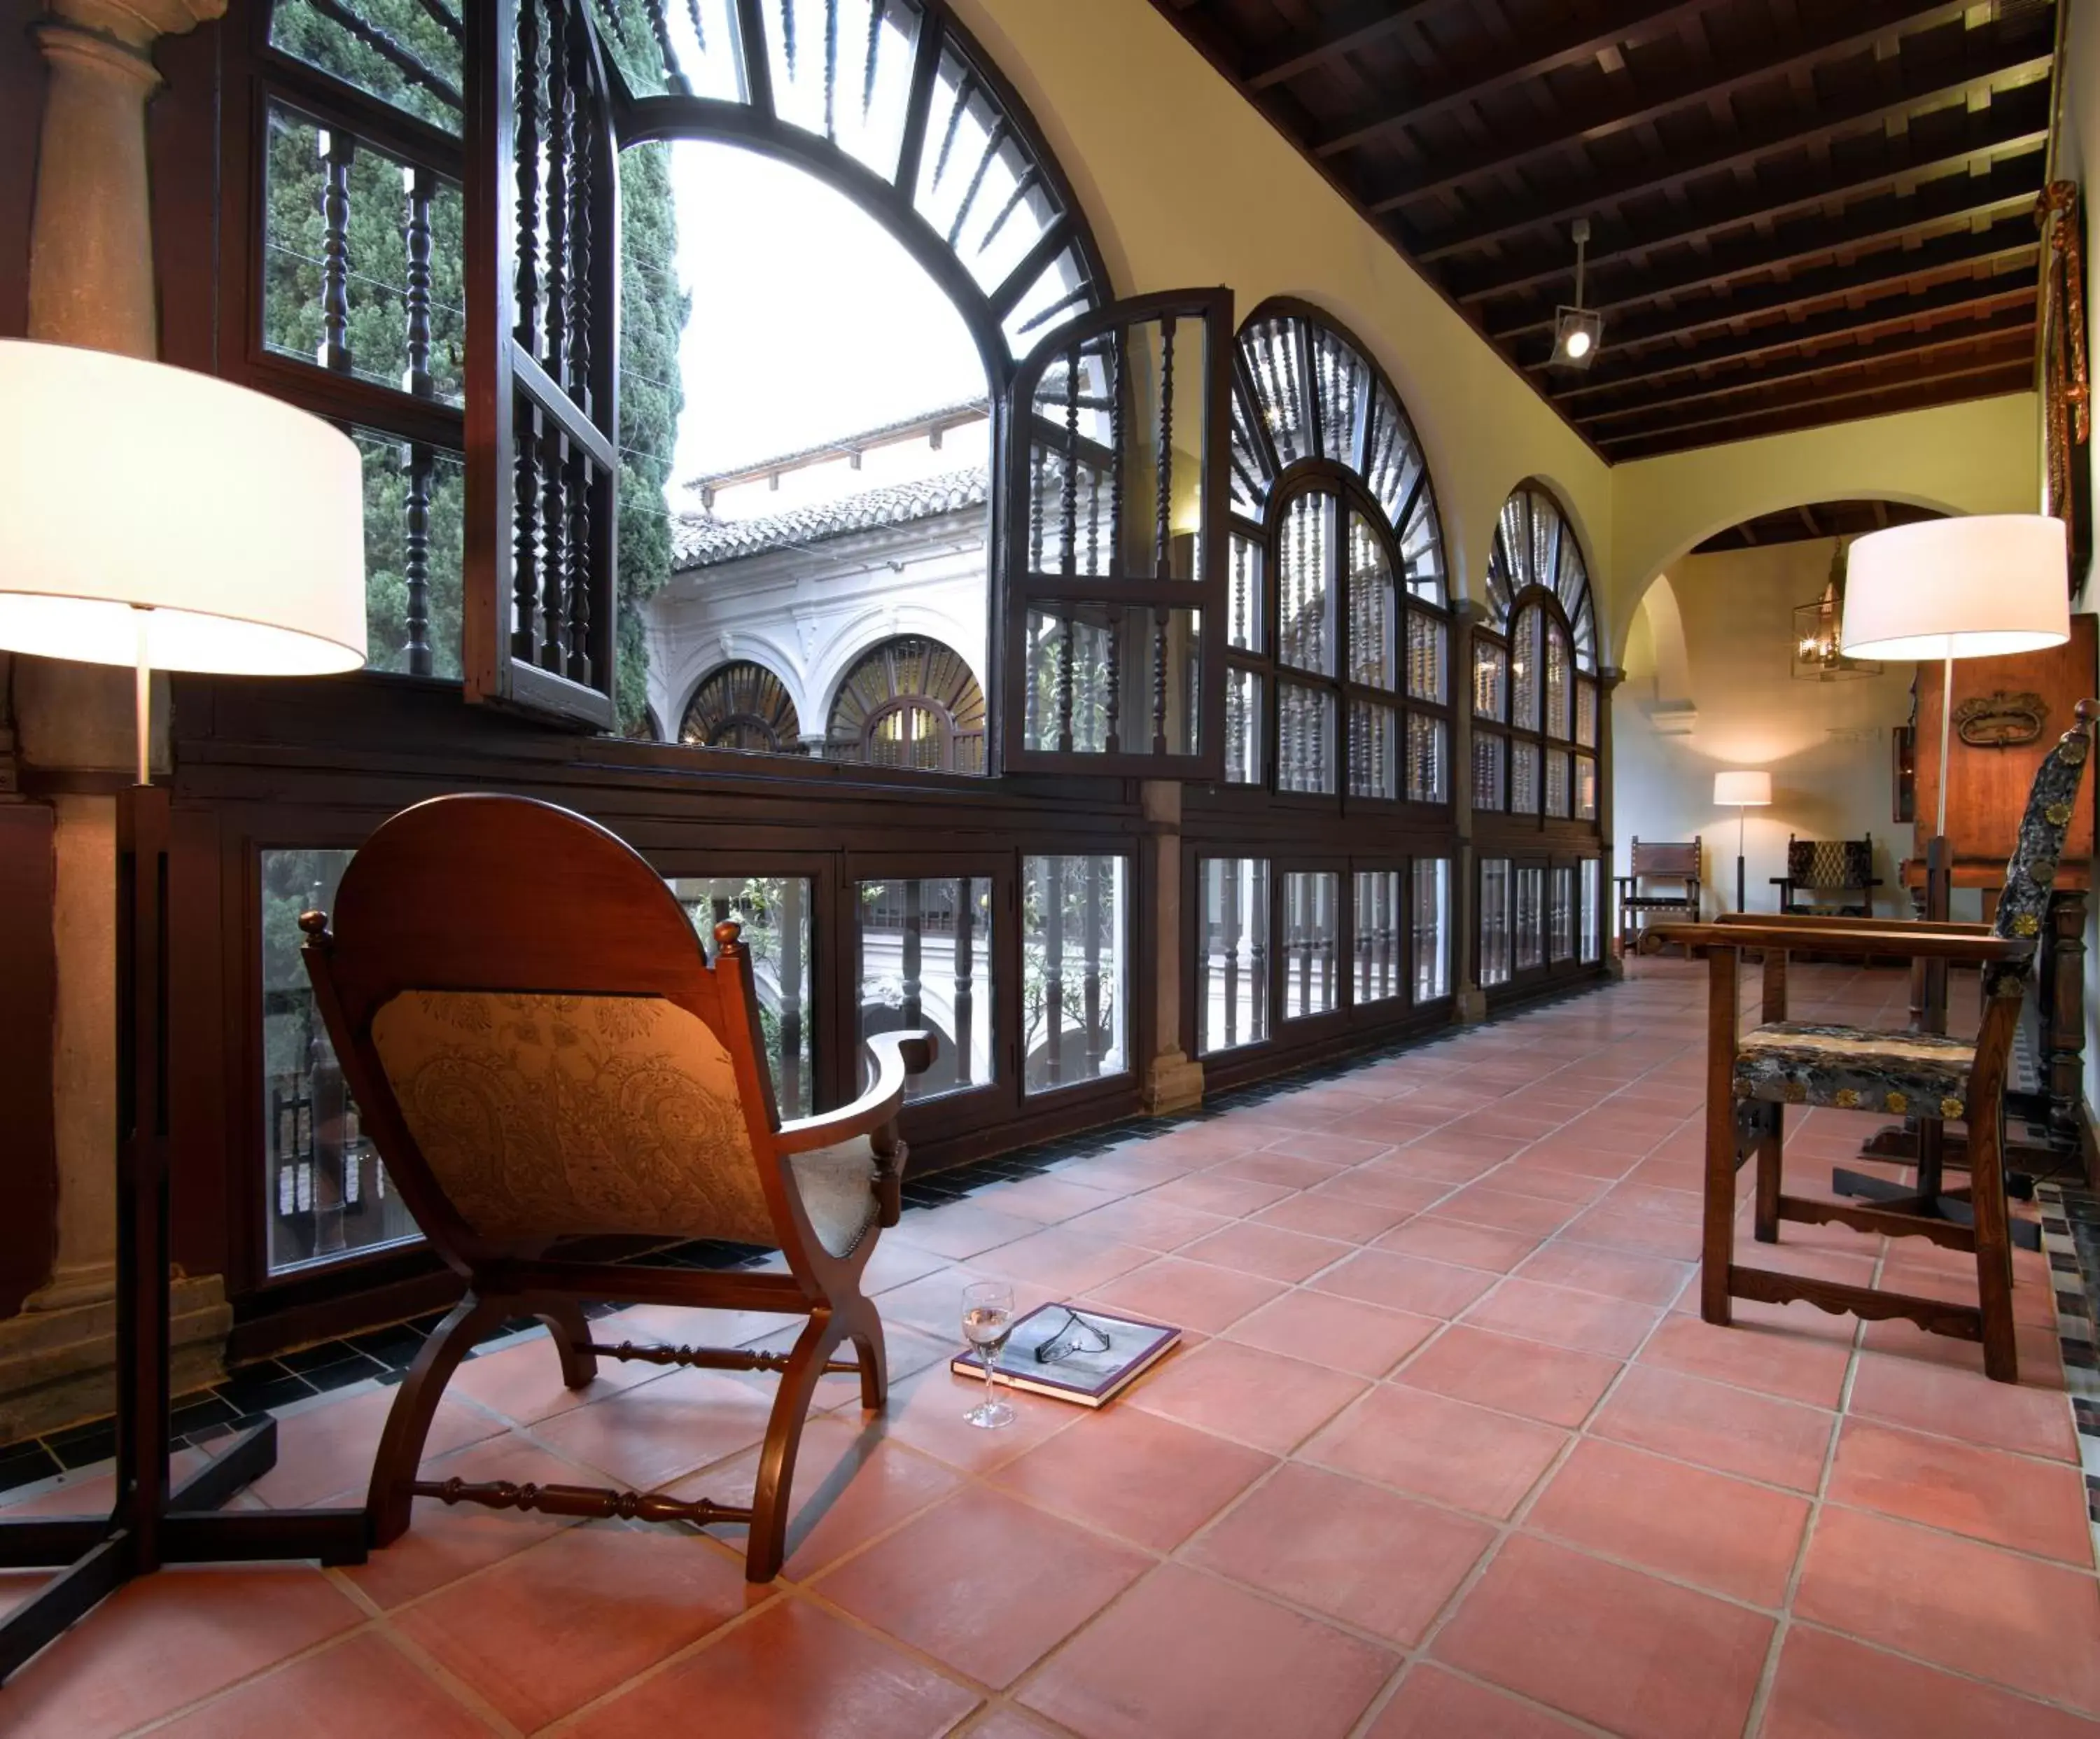 Other, Seating Area in Parador de Granada